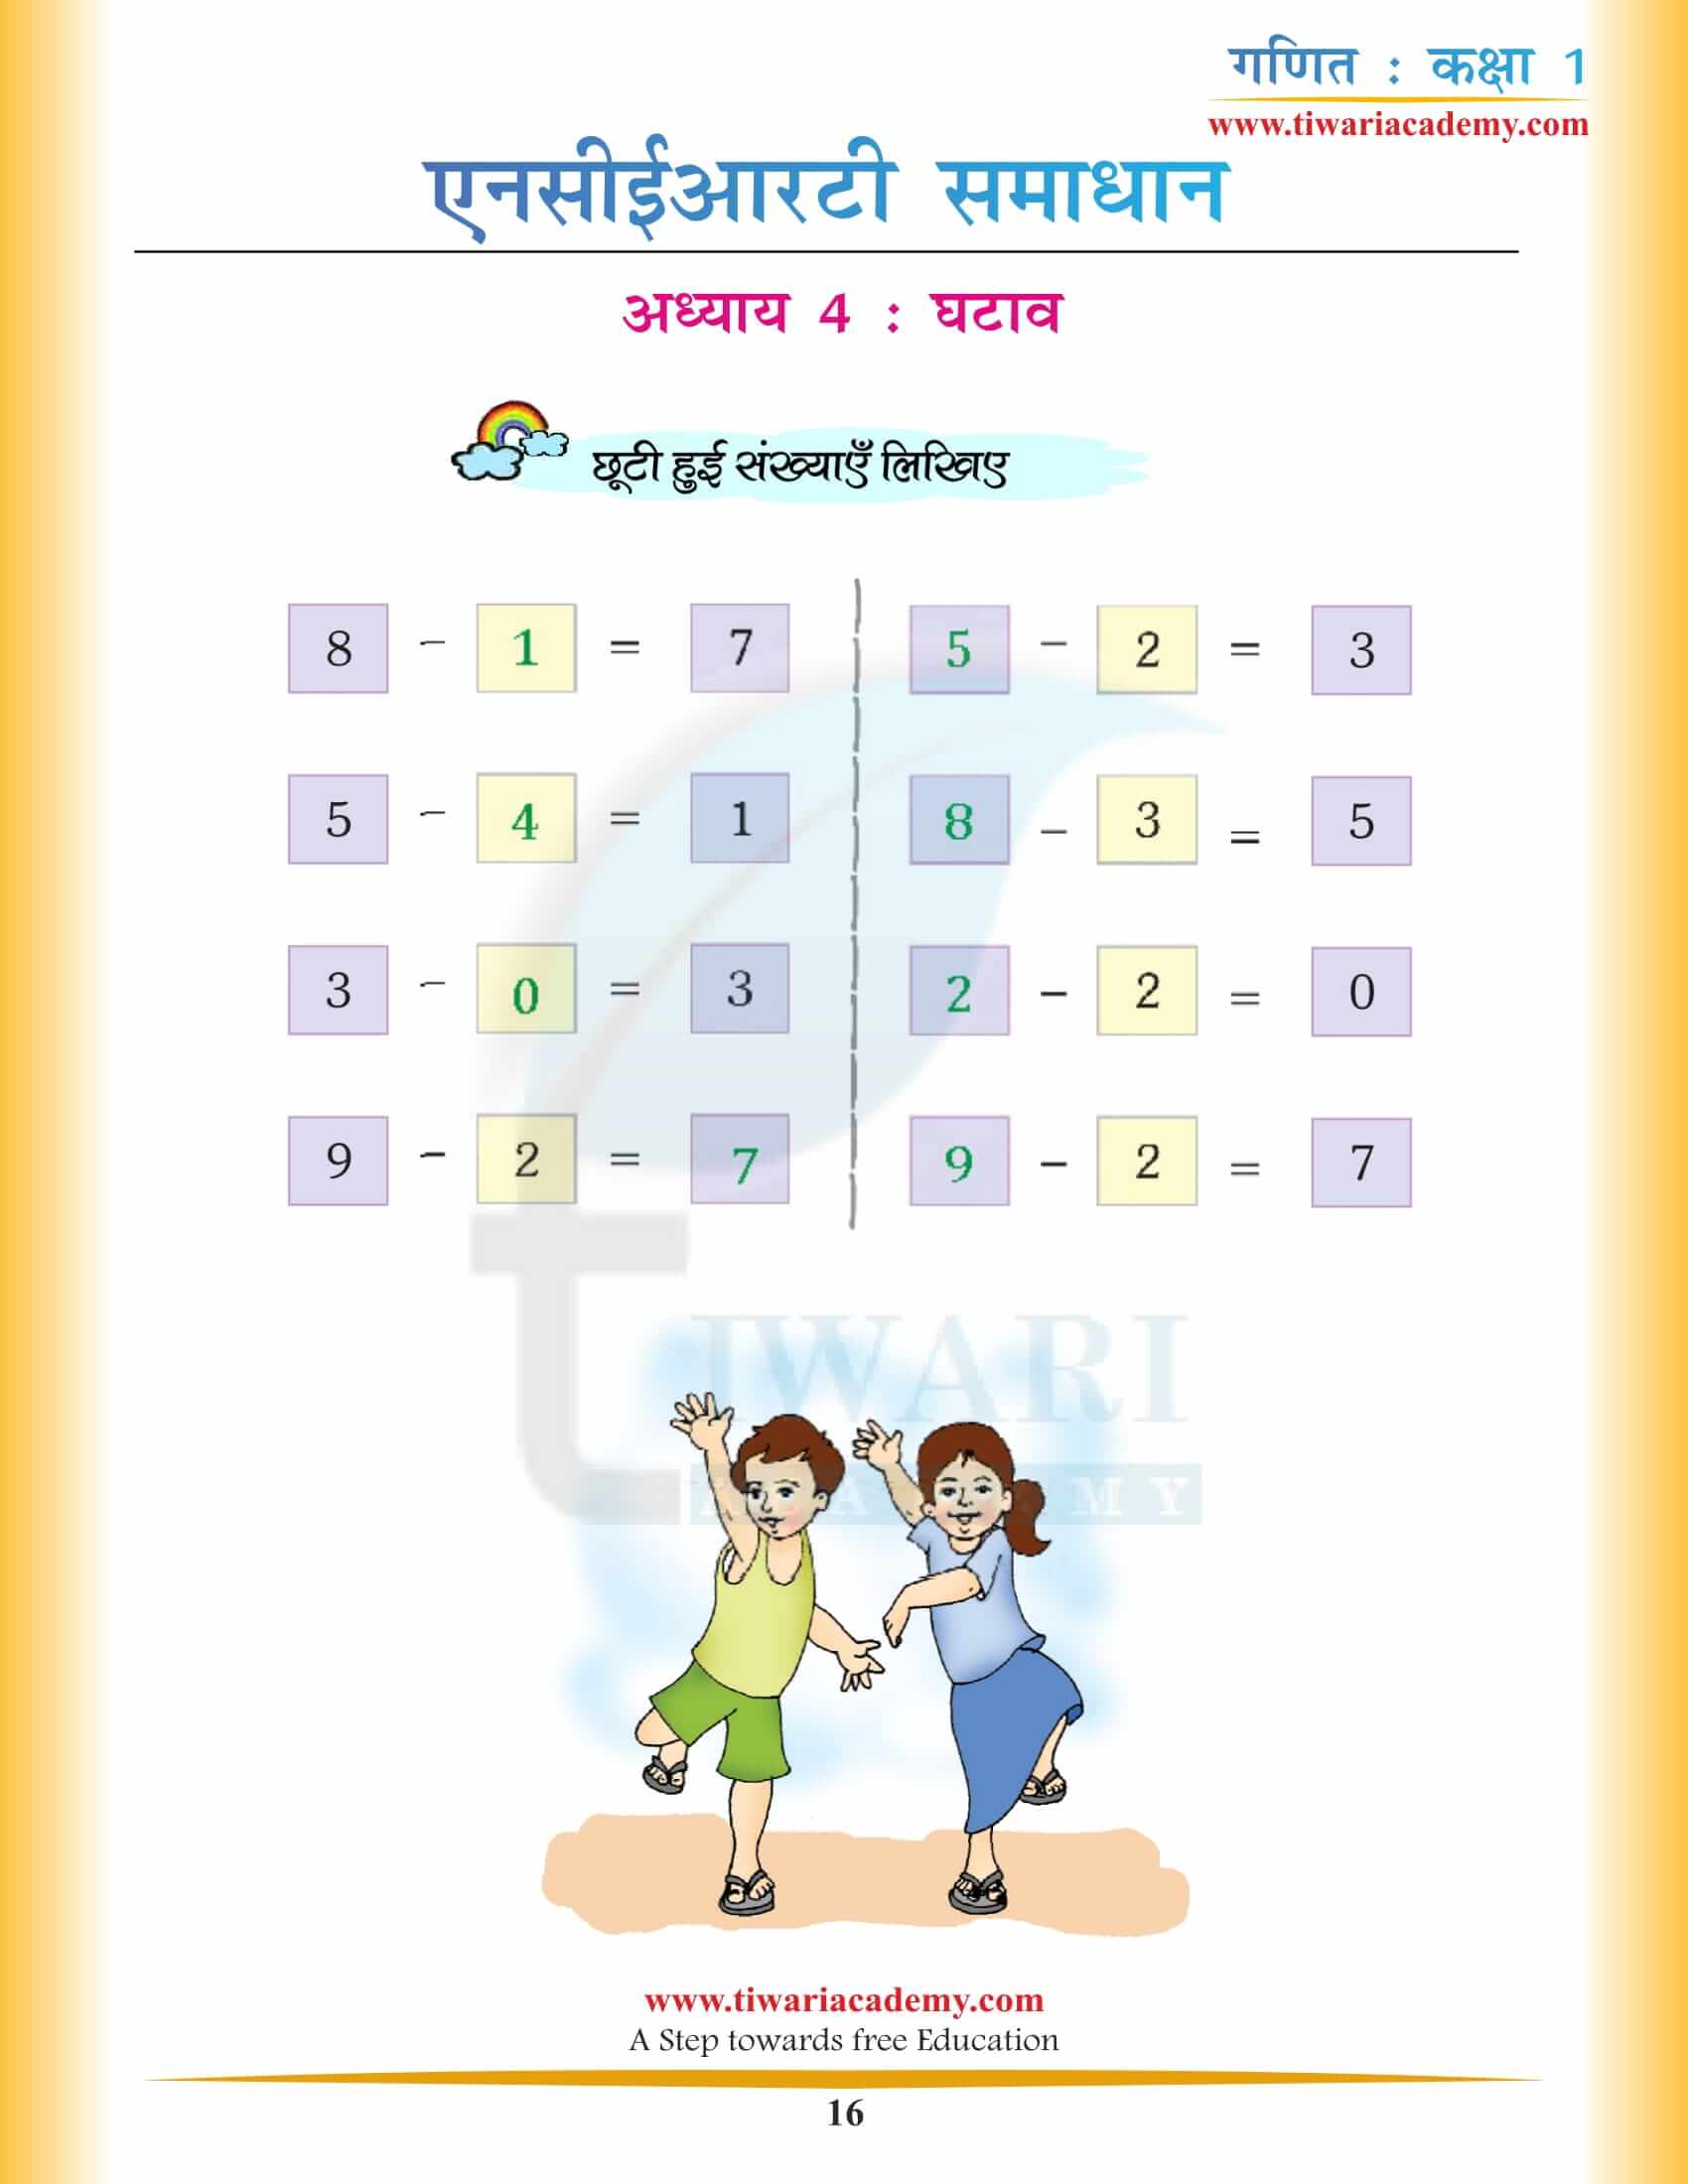 कक्षा 1 गणित अध्याय 4 एनसीईआरटी के हल हिंदी में